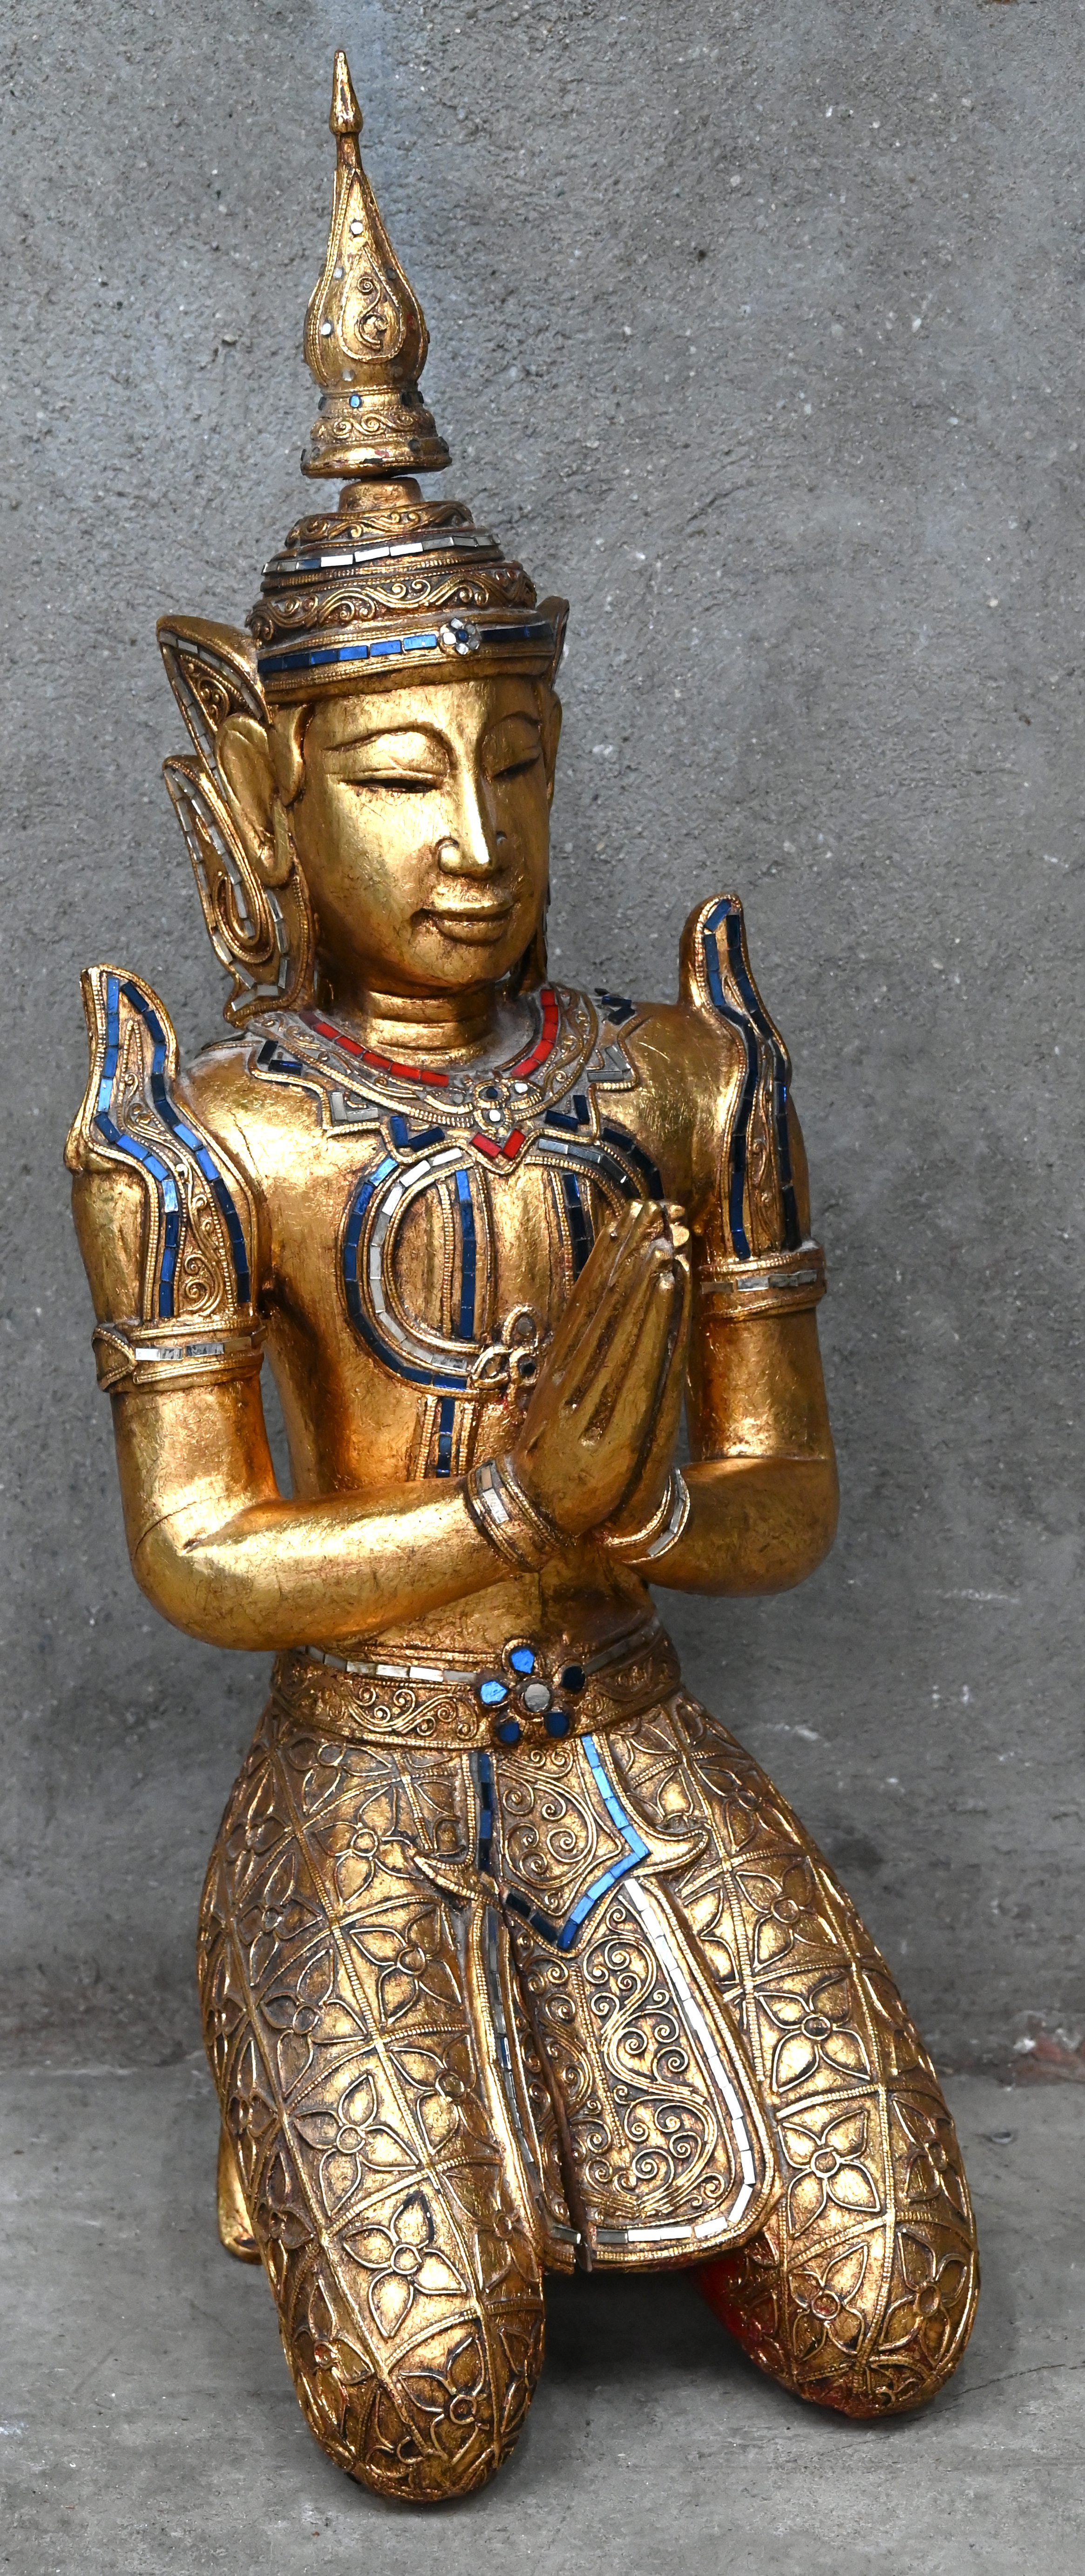 Deens in de tussentijd verantwoordelijkheid Een knielende Thaise Boeddha van verguld hout. – Jordaens N.V. Veilinghuis